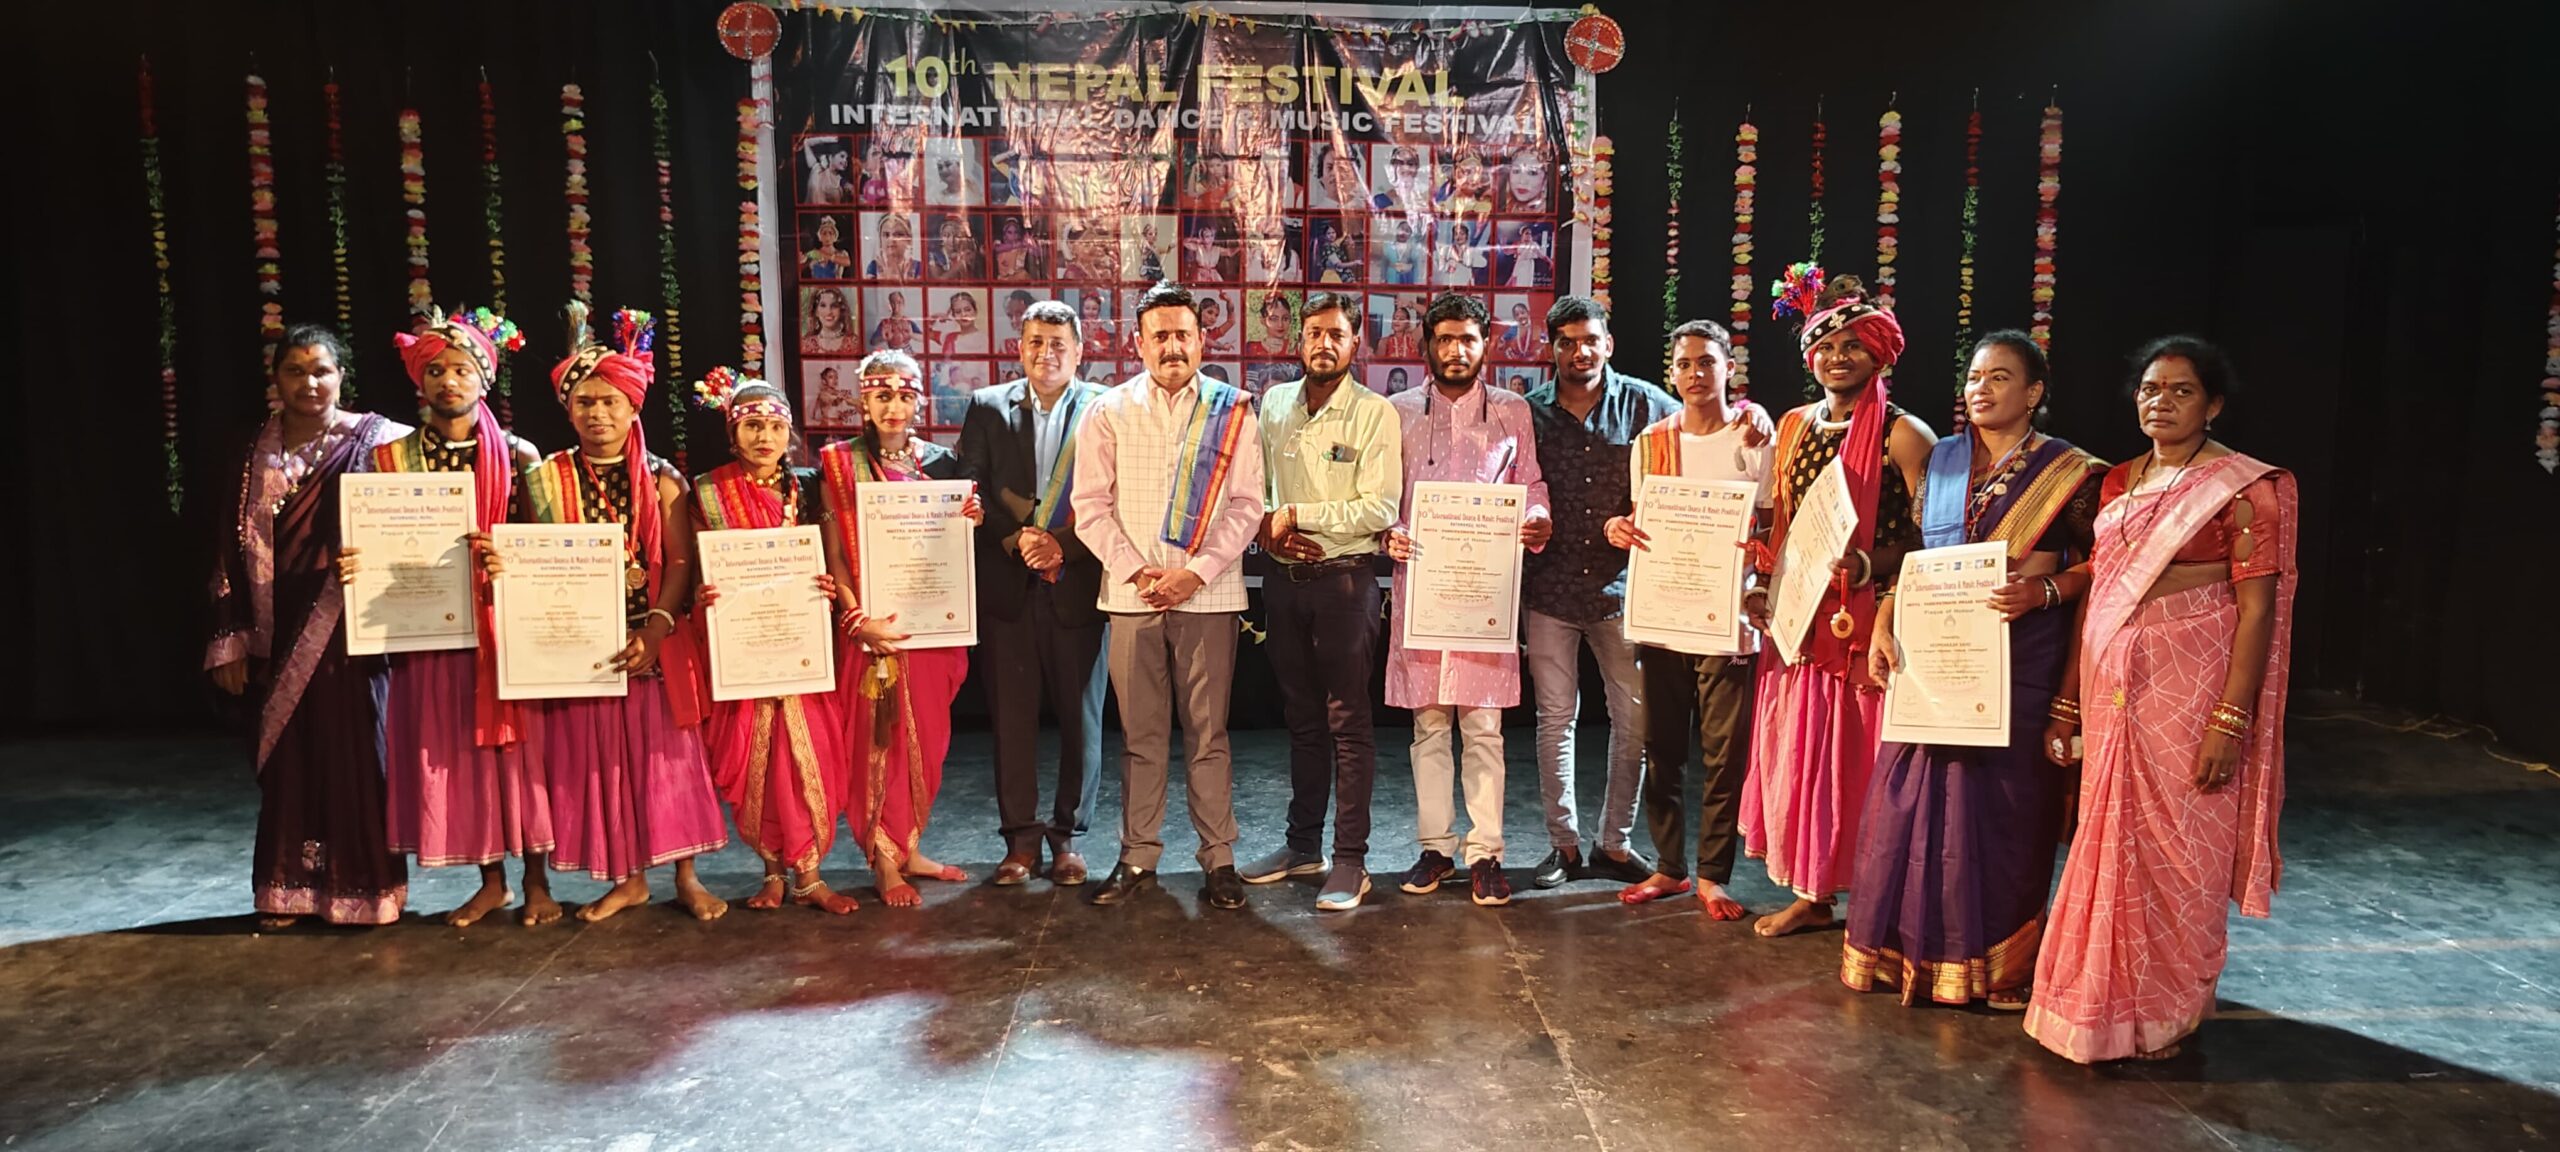 इंटरनेशनल आयोजन में छत्तीसगढ़ की संस्कृति का जलवा: बालोद जिले के सोनहा बादर चिटौद के कलाकारों को मिला नेपाल काठमांडू में प्रथम पुरस्कार, विदेशियों ने भी की छग के संस्कृति की सराहना